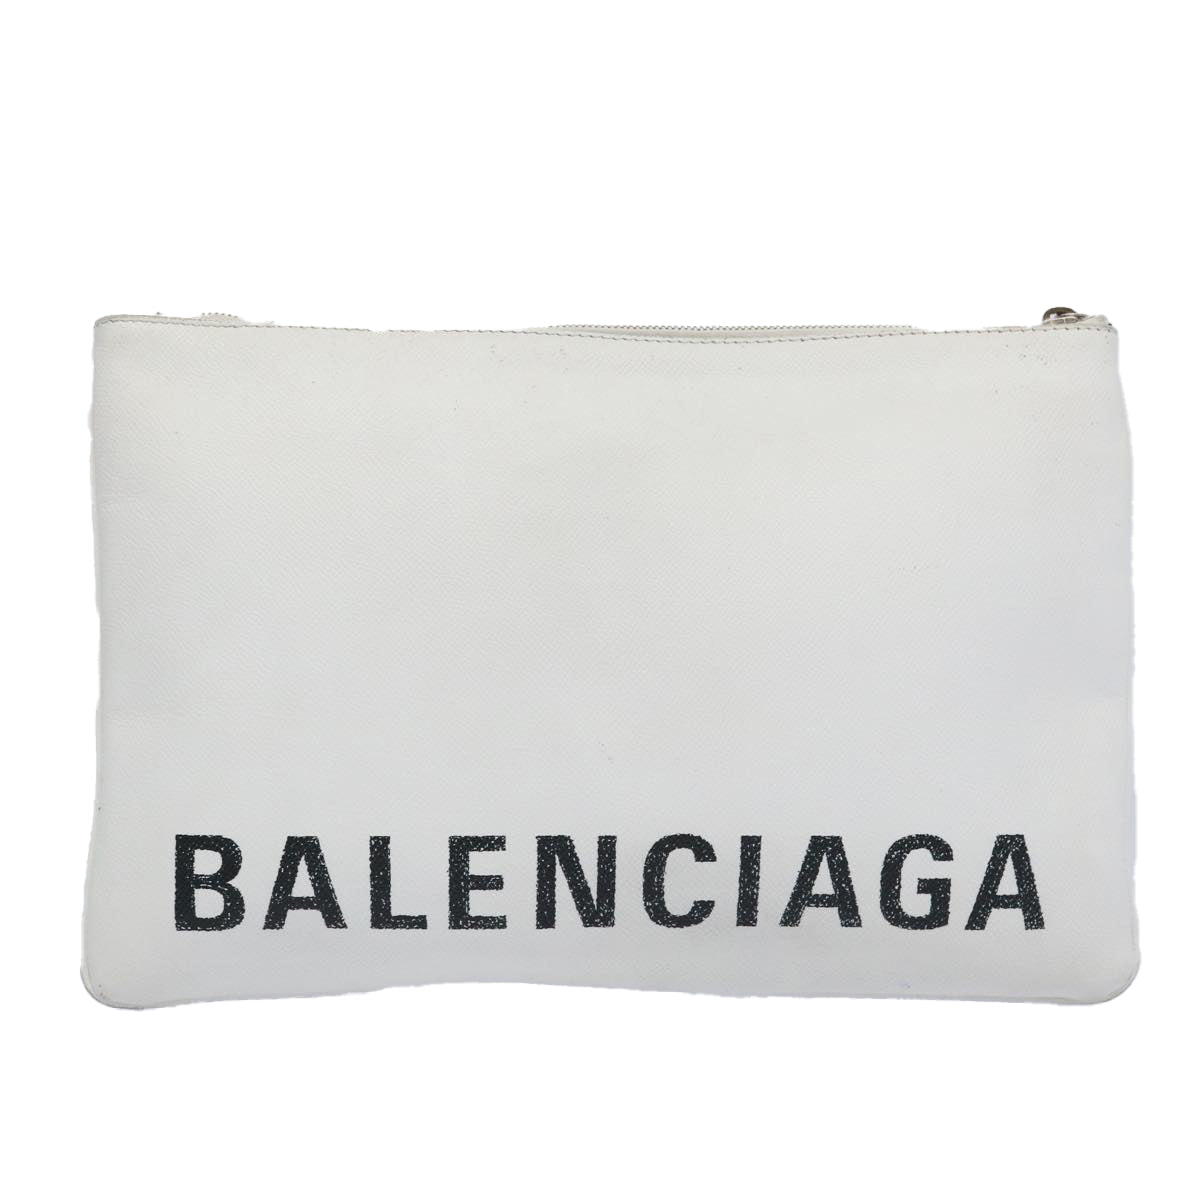 BALENCIAGA Clutch Bag Leather White Auth bs11590 - 0